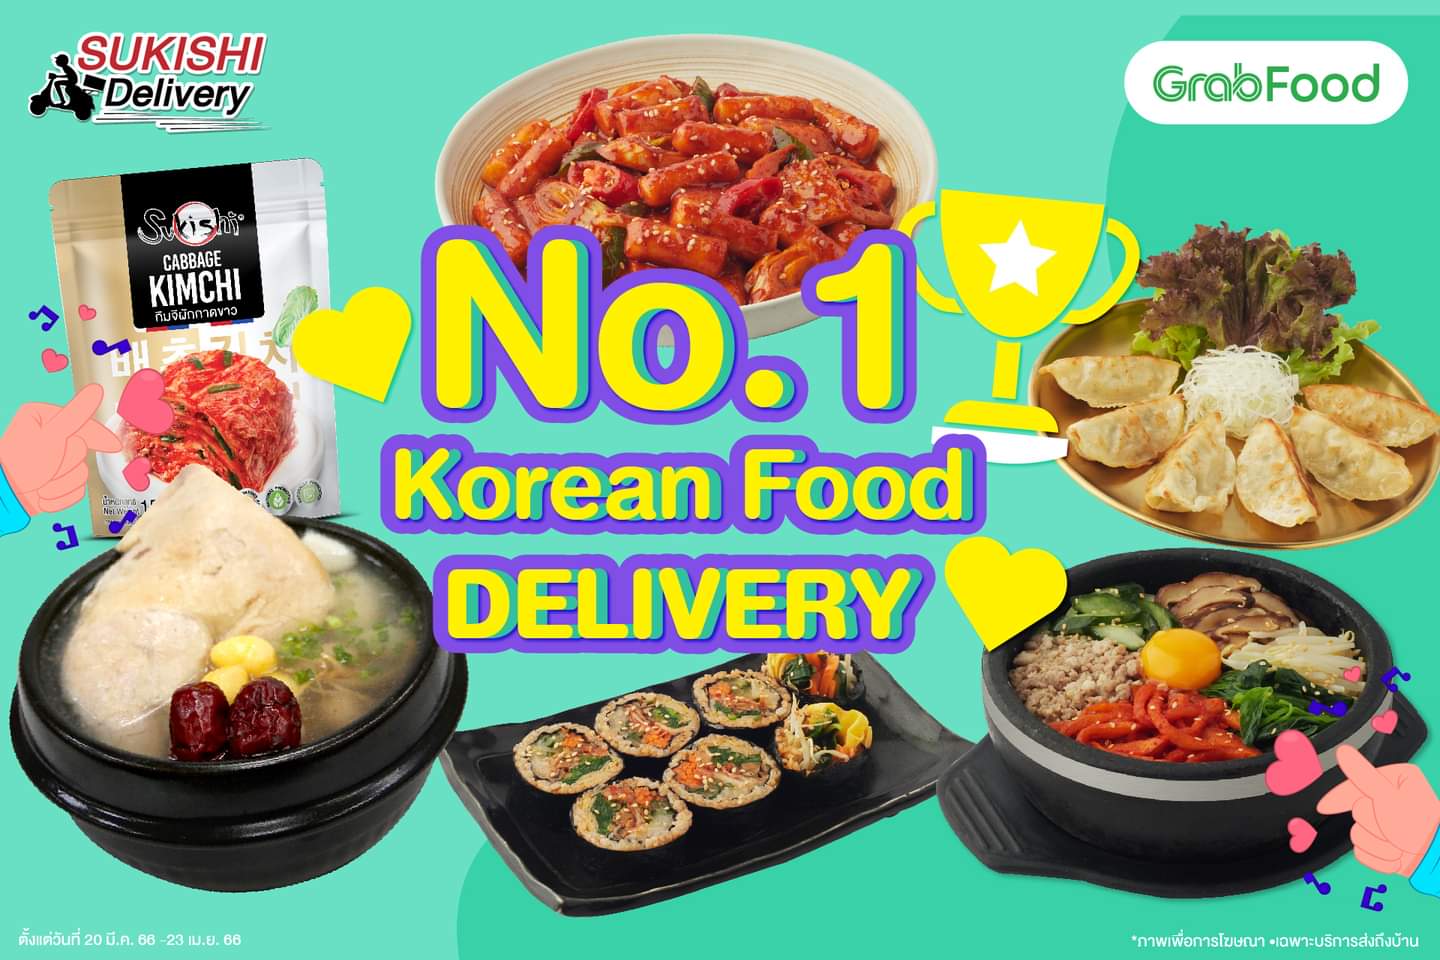 โปรโมชั่น ซูกิชิ บุฟเฟ่ต์ : No.1 Korean Food DELIVERY ลดสูงสุด 50% กับเมนูสายเกา